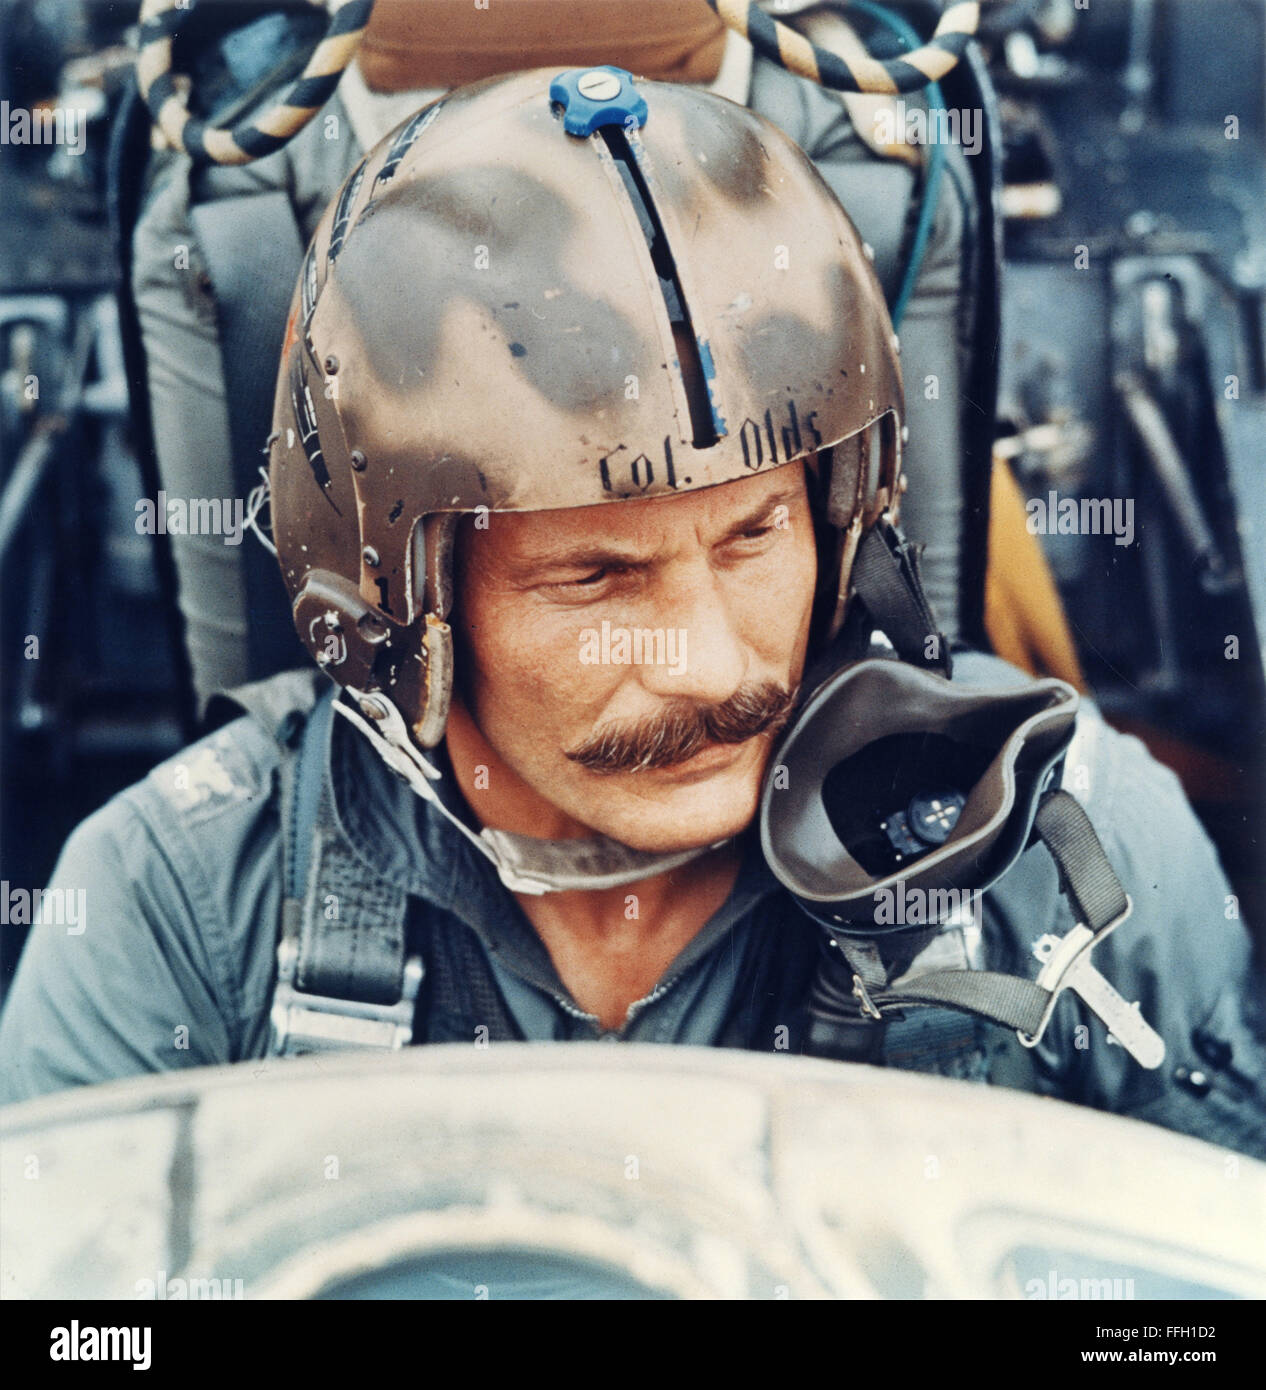 Then-Col. Robin Olds si siede in un F-4 Phantom II nel sud-est asiatico. Olds è stato valutato un triplo di ace, di aver girato verso il basso 17 aerei nemici durante la Seconda Guerra Mondiale e la guerra del Vietnam. Il Phantom II inizialmente eseguite tre Tactical air ruoli: superiorità aerea, interdizione e vicino a supporto dell'aria. Foto Stock